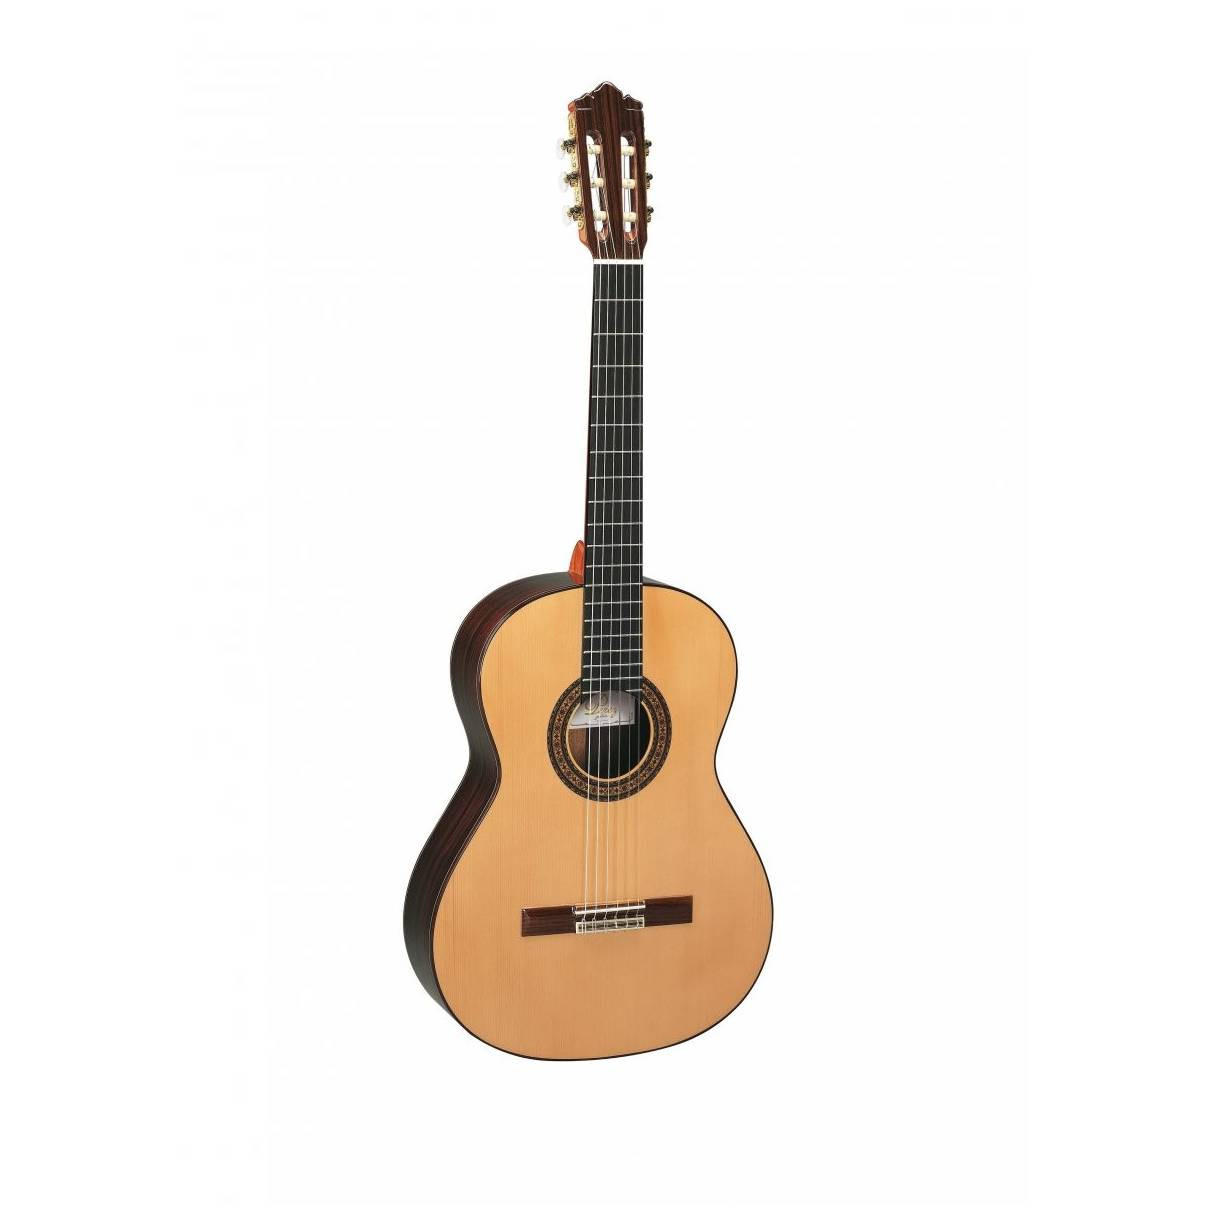 Классические гитары Perez 650 Cedar 38 дюймовая классическая акустическая гитара 6 струнная деревянная гитара для начинающих студентов